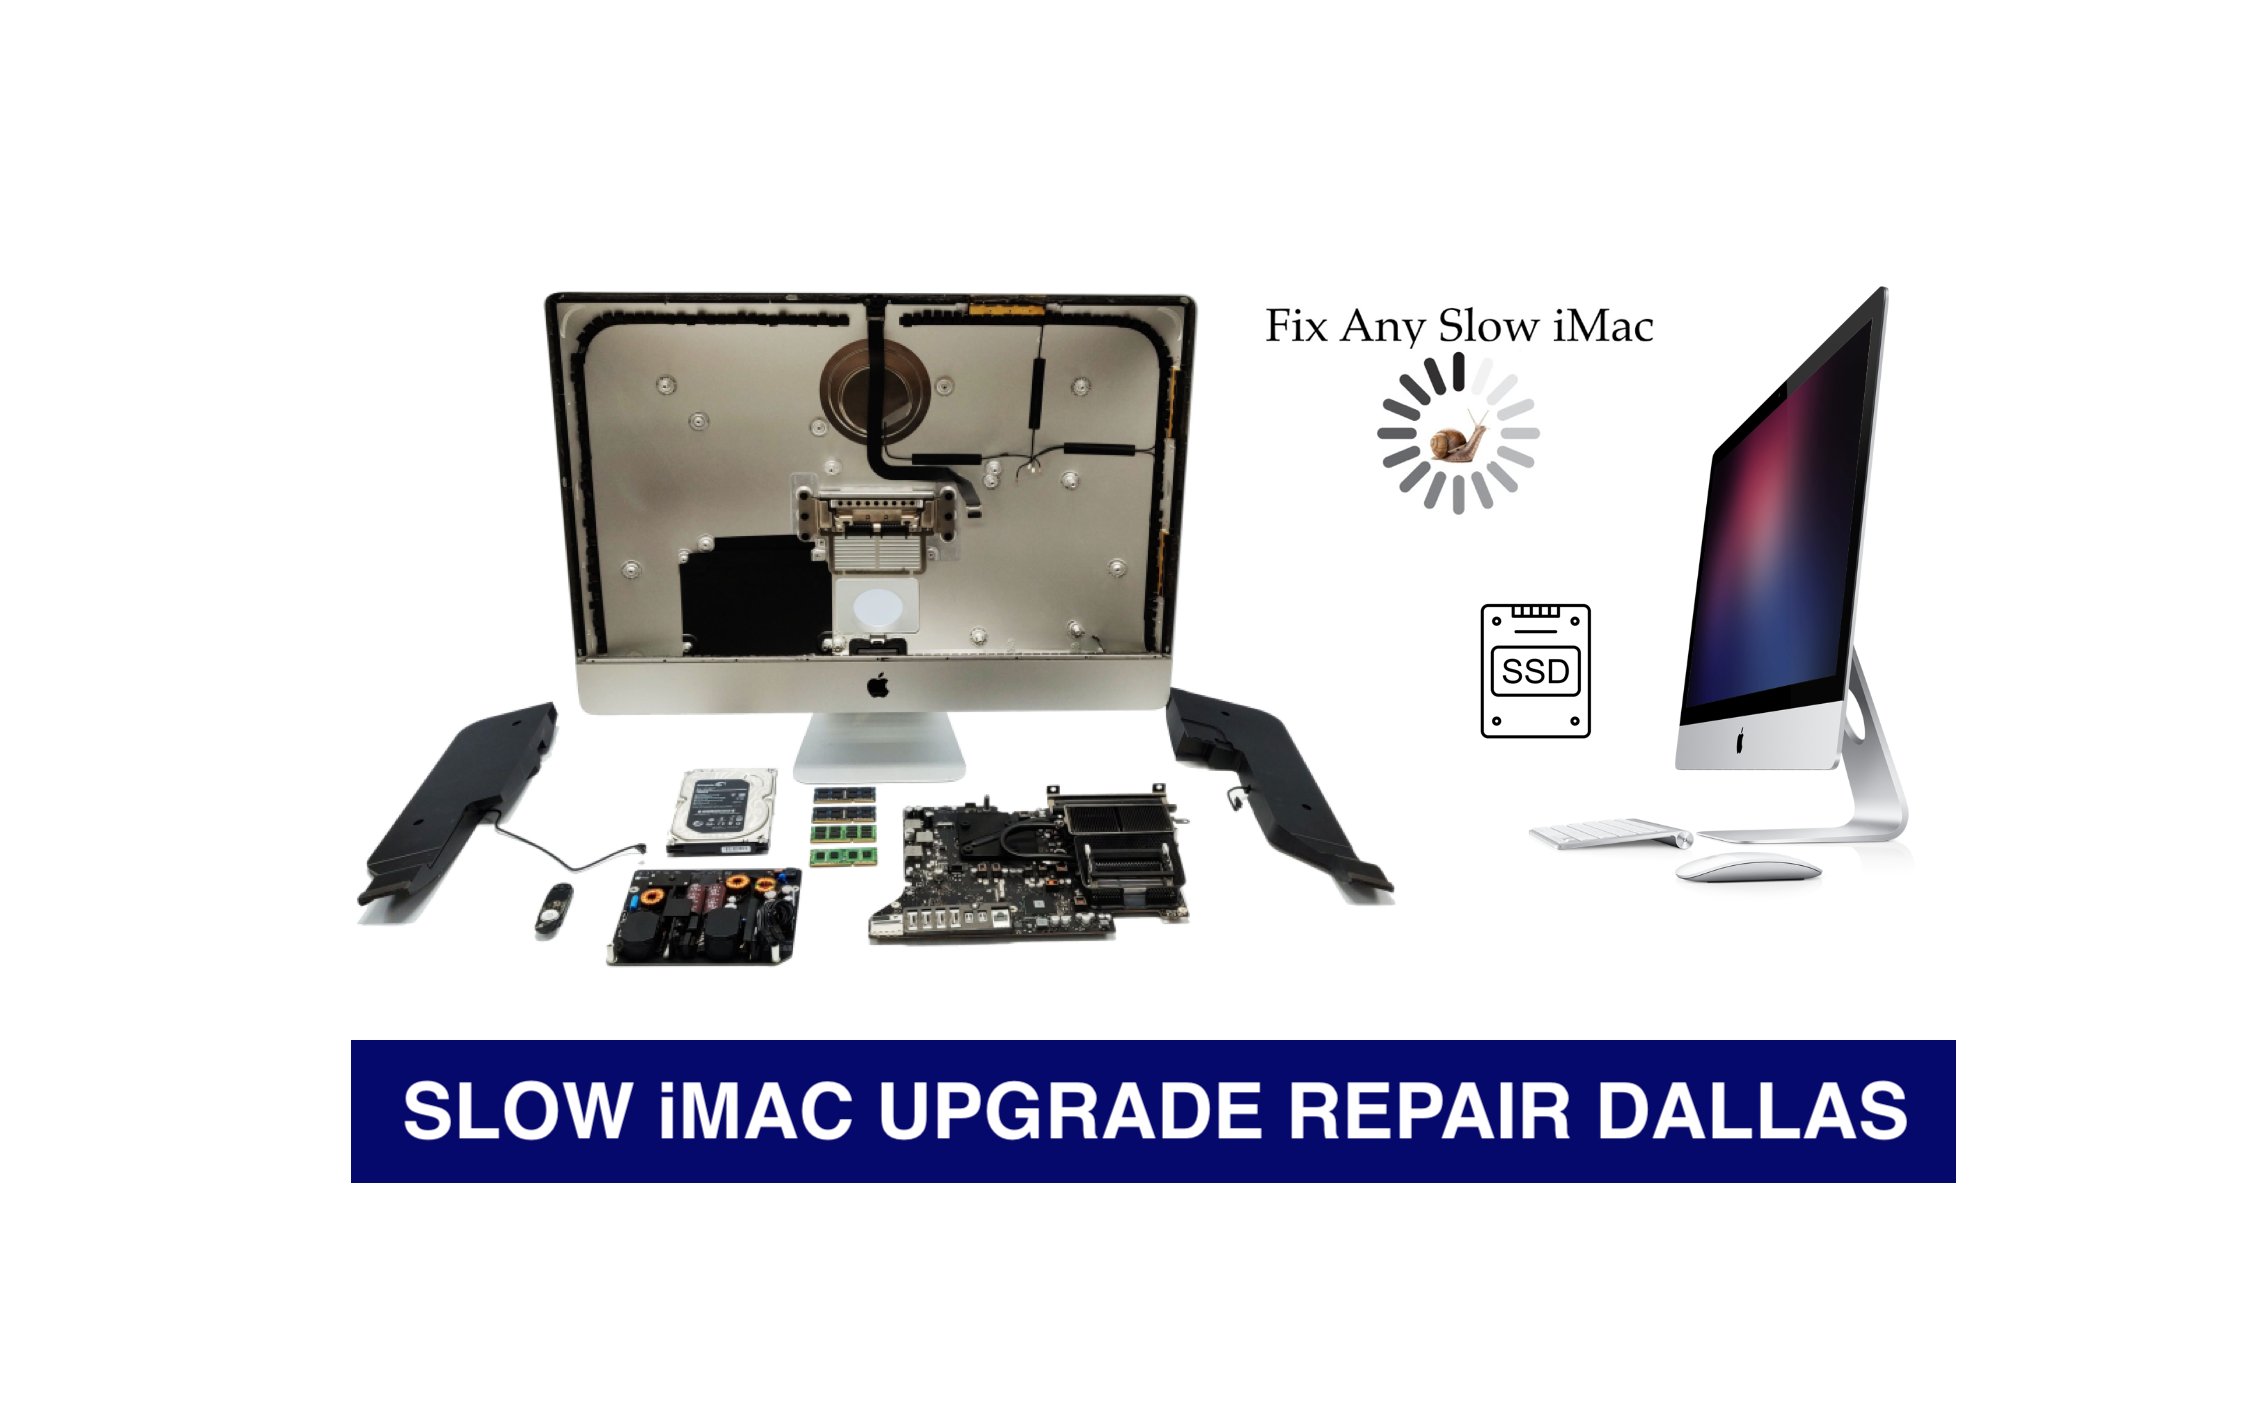 “imac-repair-dallas-upgrade”